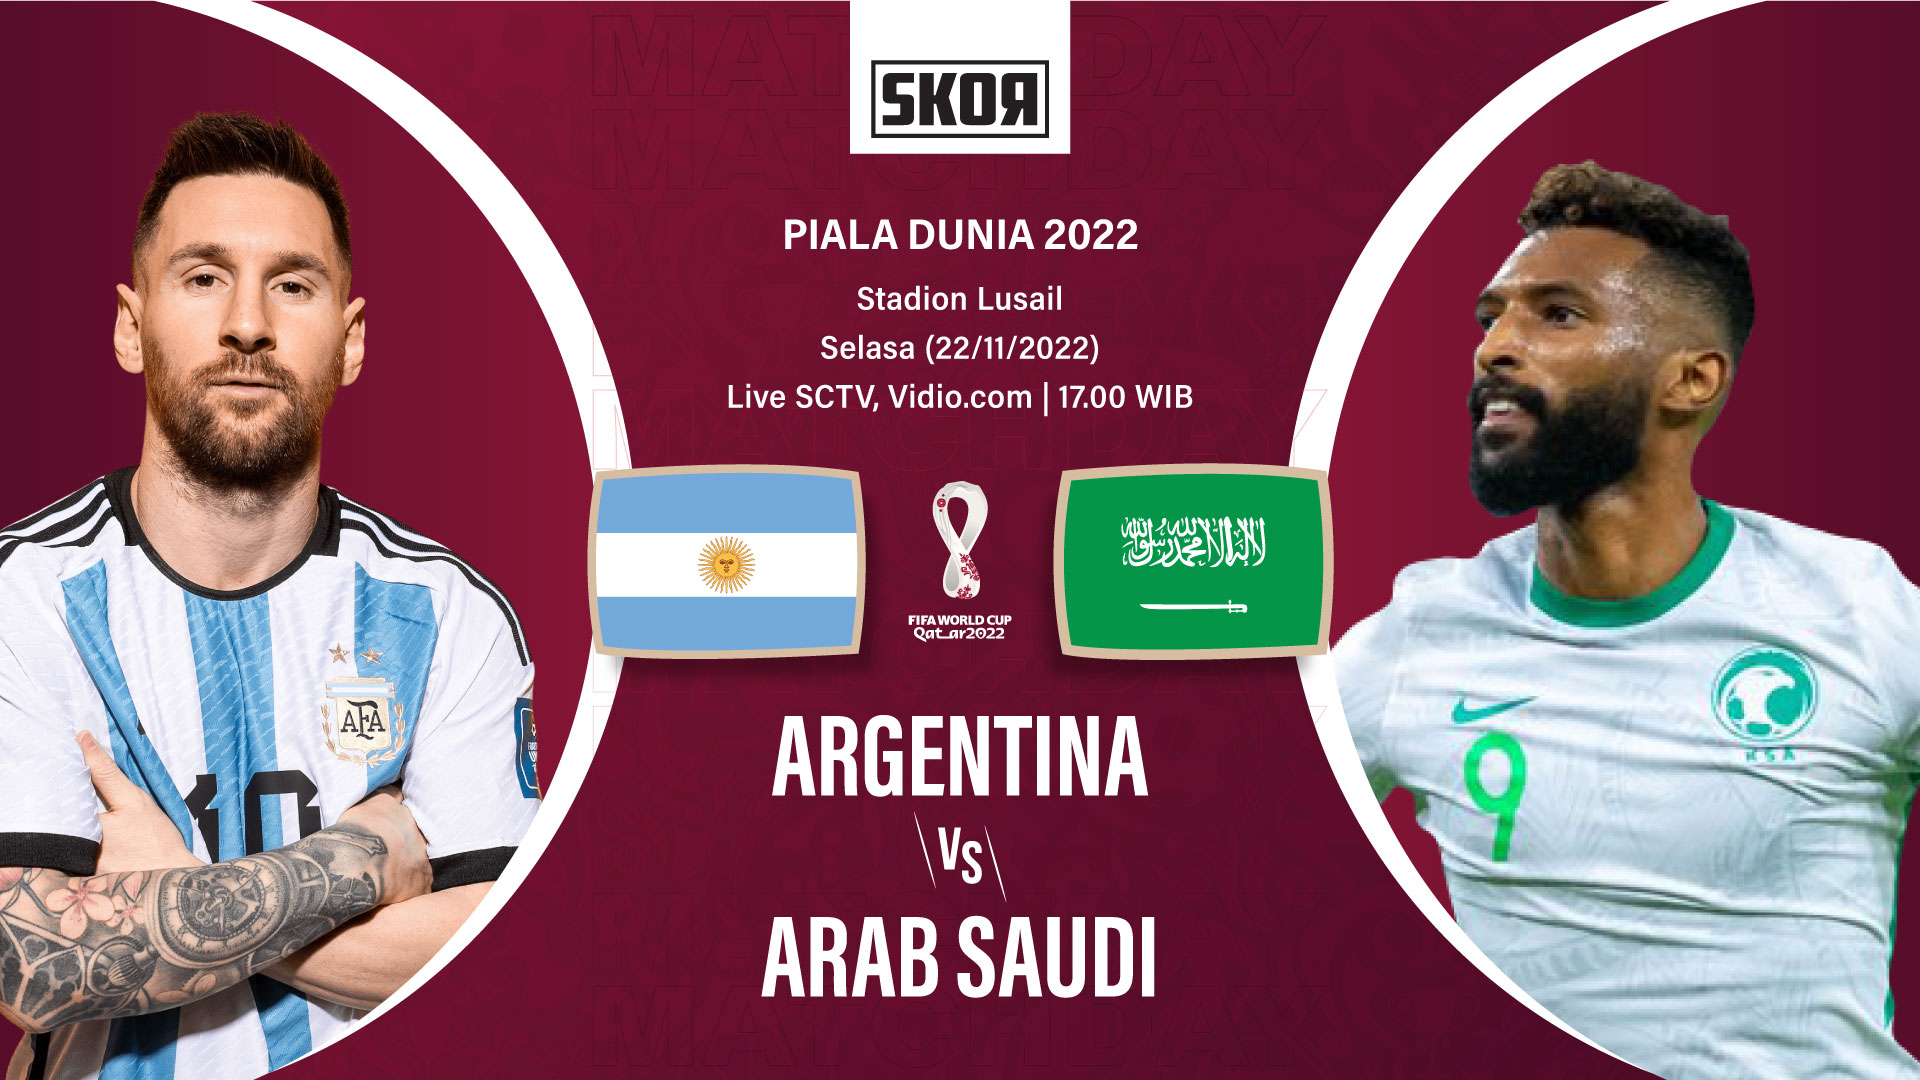 Piala Dunia 2022: Kalah dari Arab Saudi, Argentina Dapat Dukungan Rafael Nadal